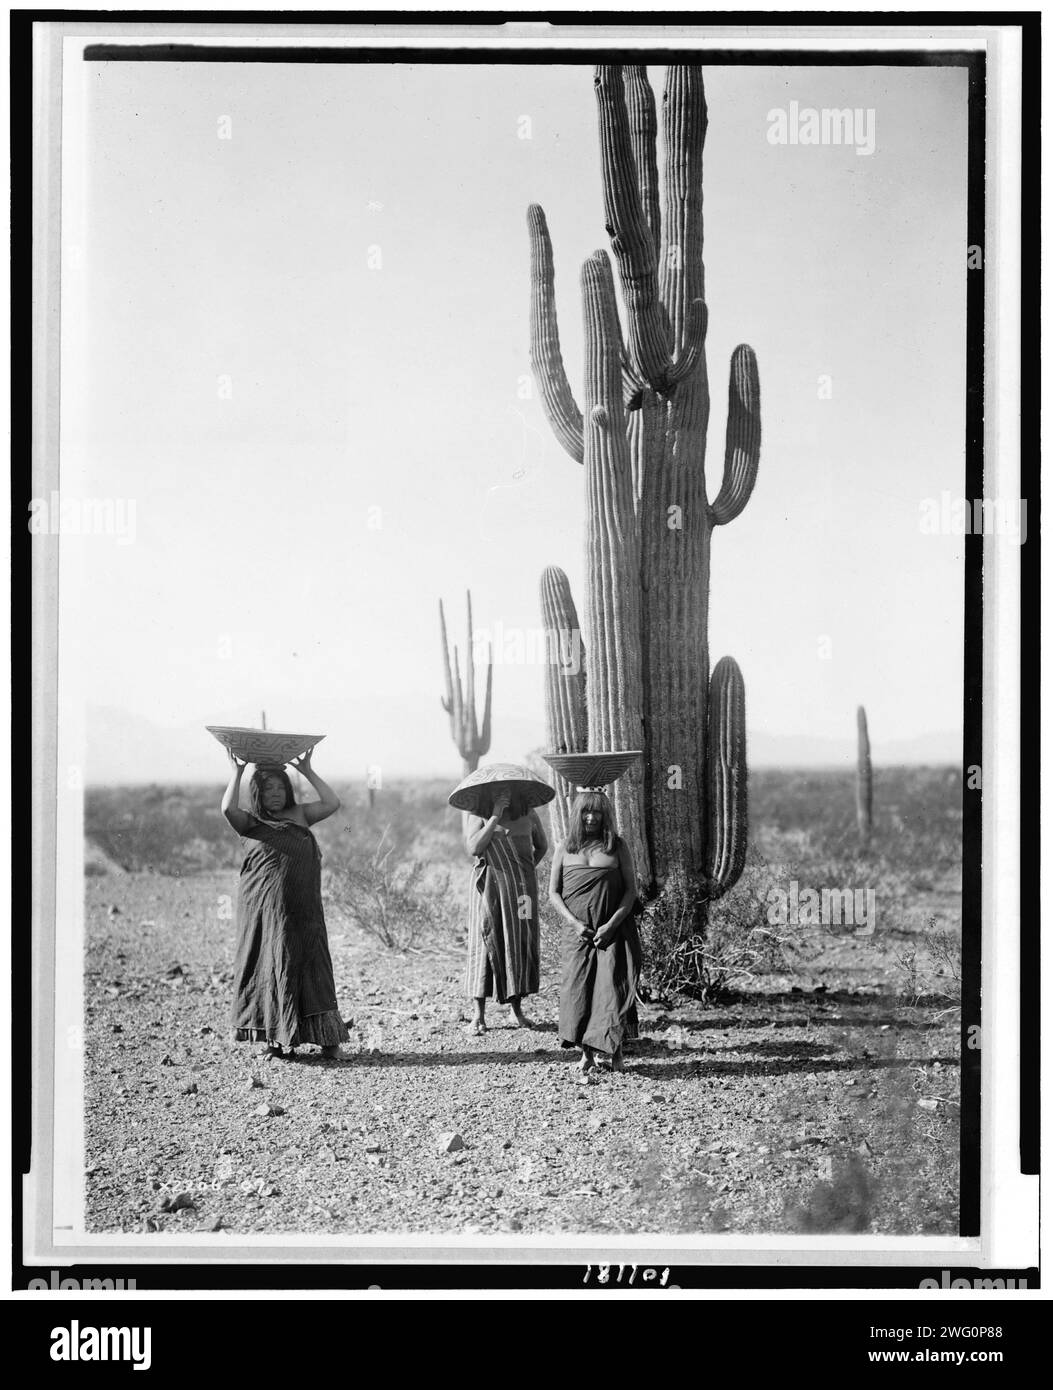 Maricopa-Frauen sammeln Früchte aus Saguaro-Kakteen, 1907, um 1907. Drei Marikopa-Frauen mit Körben auf dem Kopf, die bei Saguaro-Kakteen stehen. Stockfoto